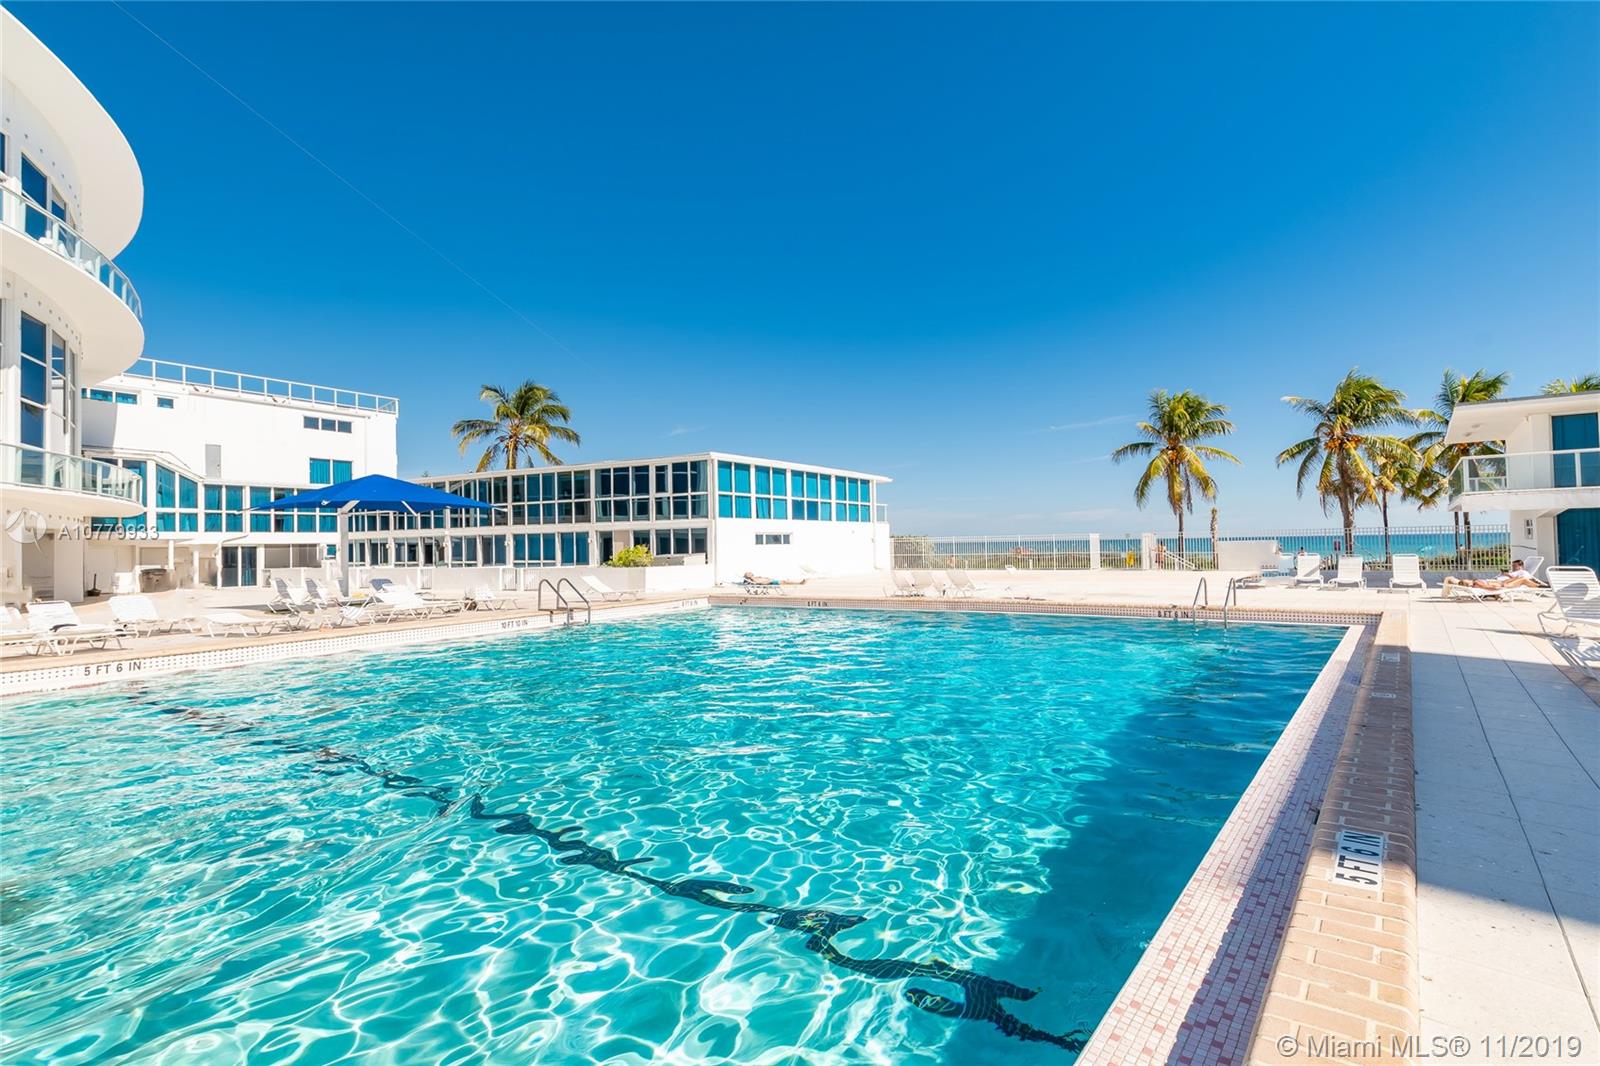 Castle Beach Club Unit #1126 Condo for Sale in Mid-Beach - Miami Beach